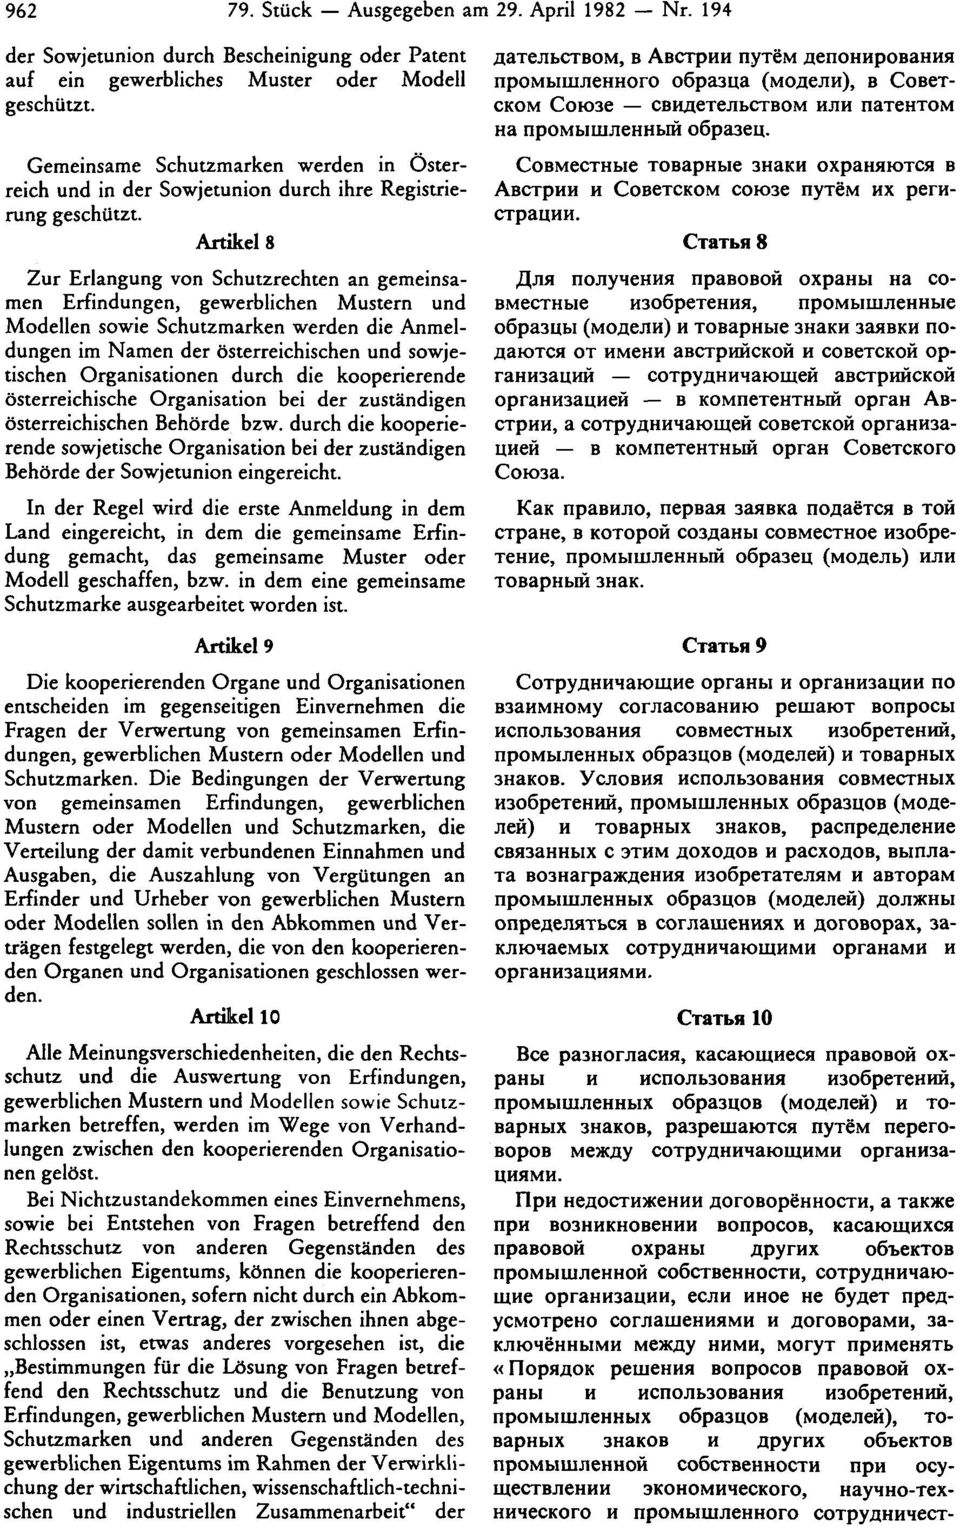 Artikel 8 Zur Erlangung von Schutzrechten an gemeinsamen Erfindungen, gewerblichen Mustern und Modellen sowie Schutzmarken werden die Anmeldungen im Namen der österreichischen und sowjetischen